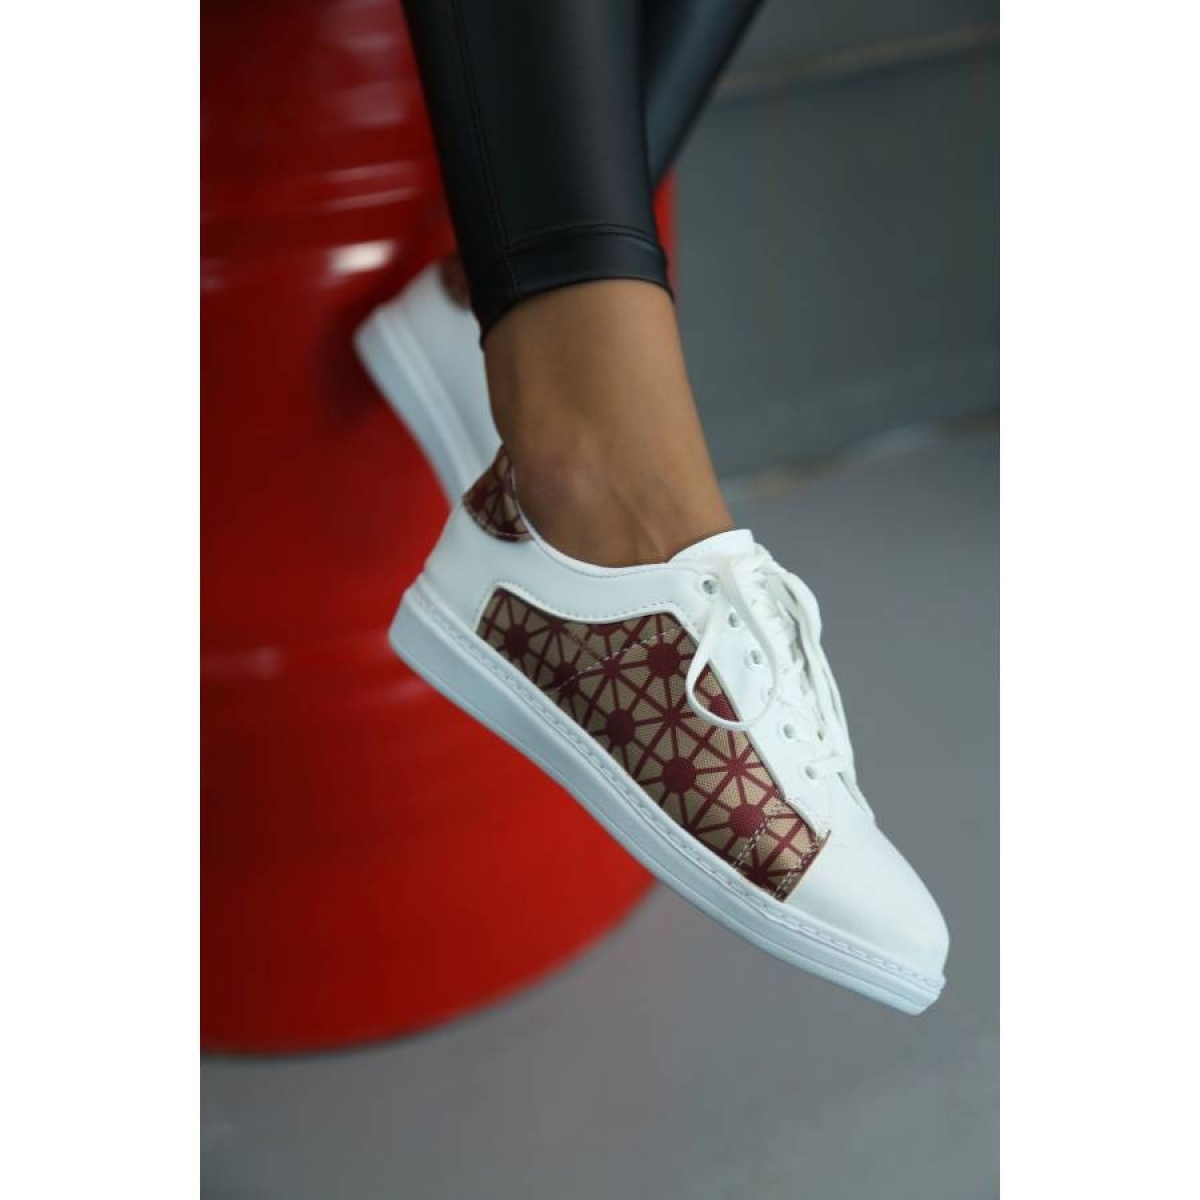 Flo Beyaz-Bordo Kadın Spor Ayakkabı 5013-20-101001. 4